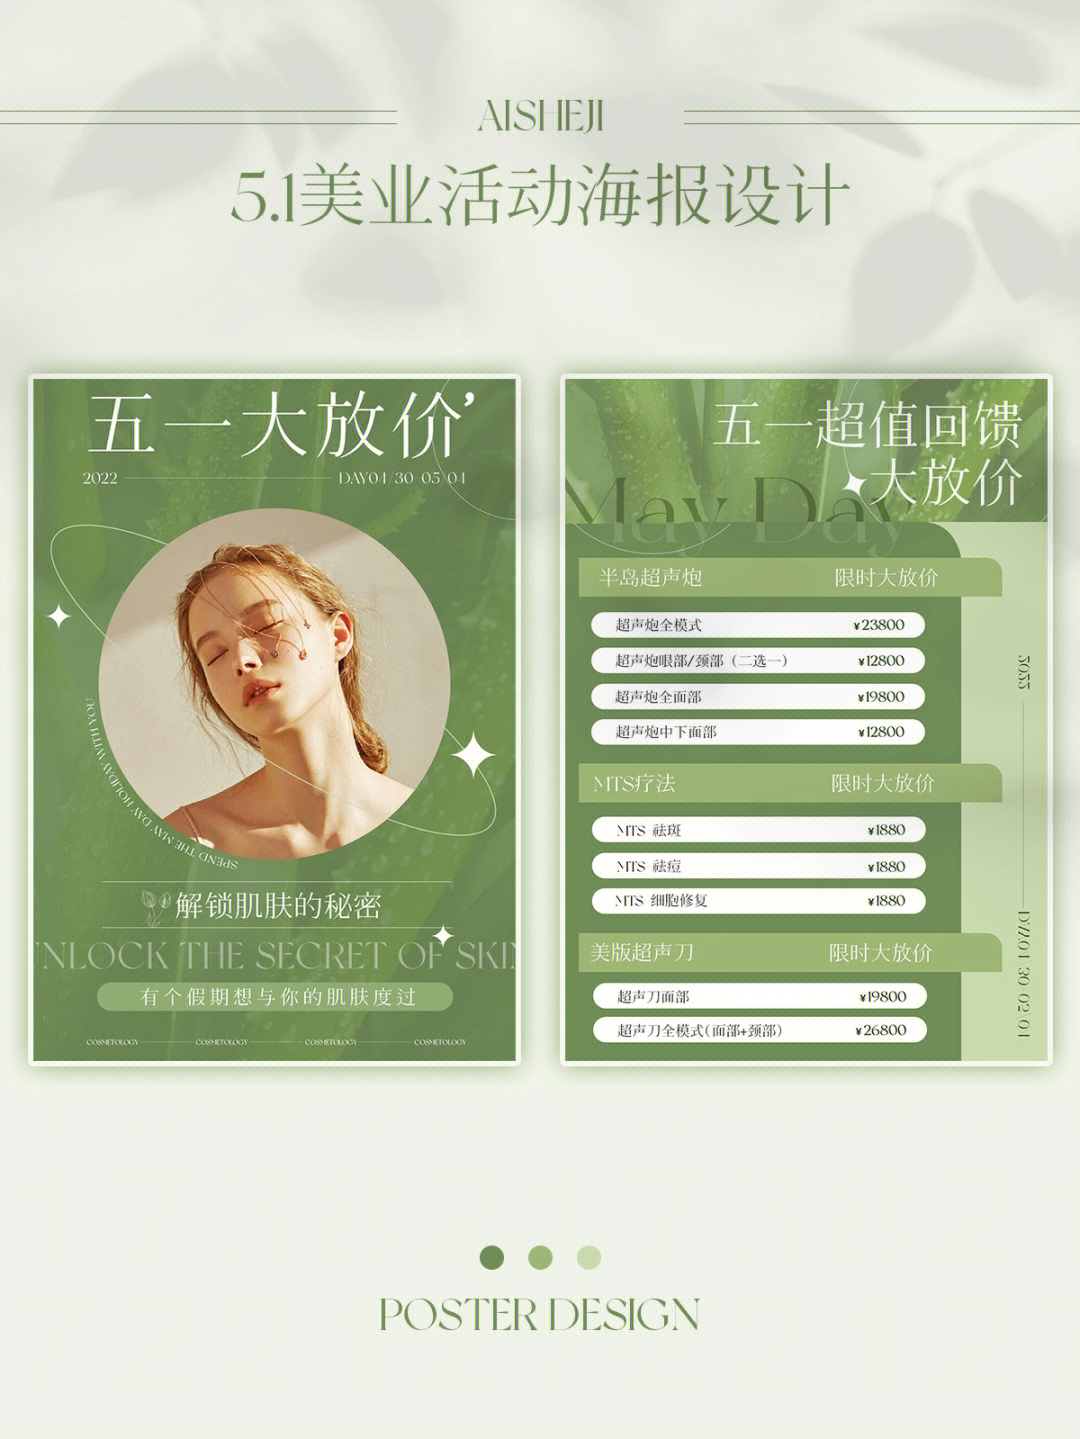 清新绿色系·五一活动海报设计价目表设计 行业:美容院 皮肤管理 医美